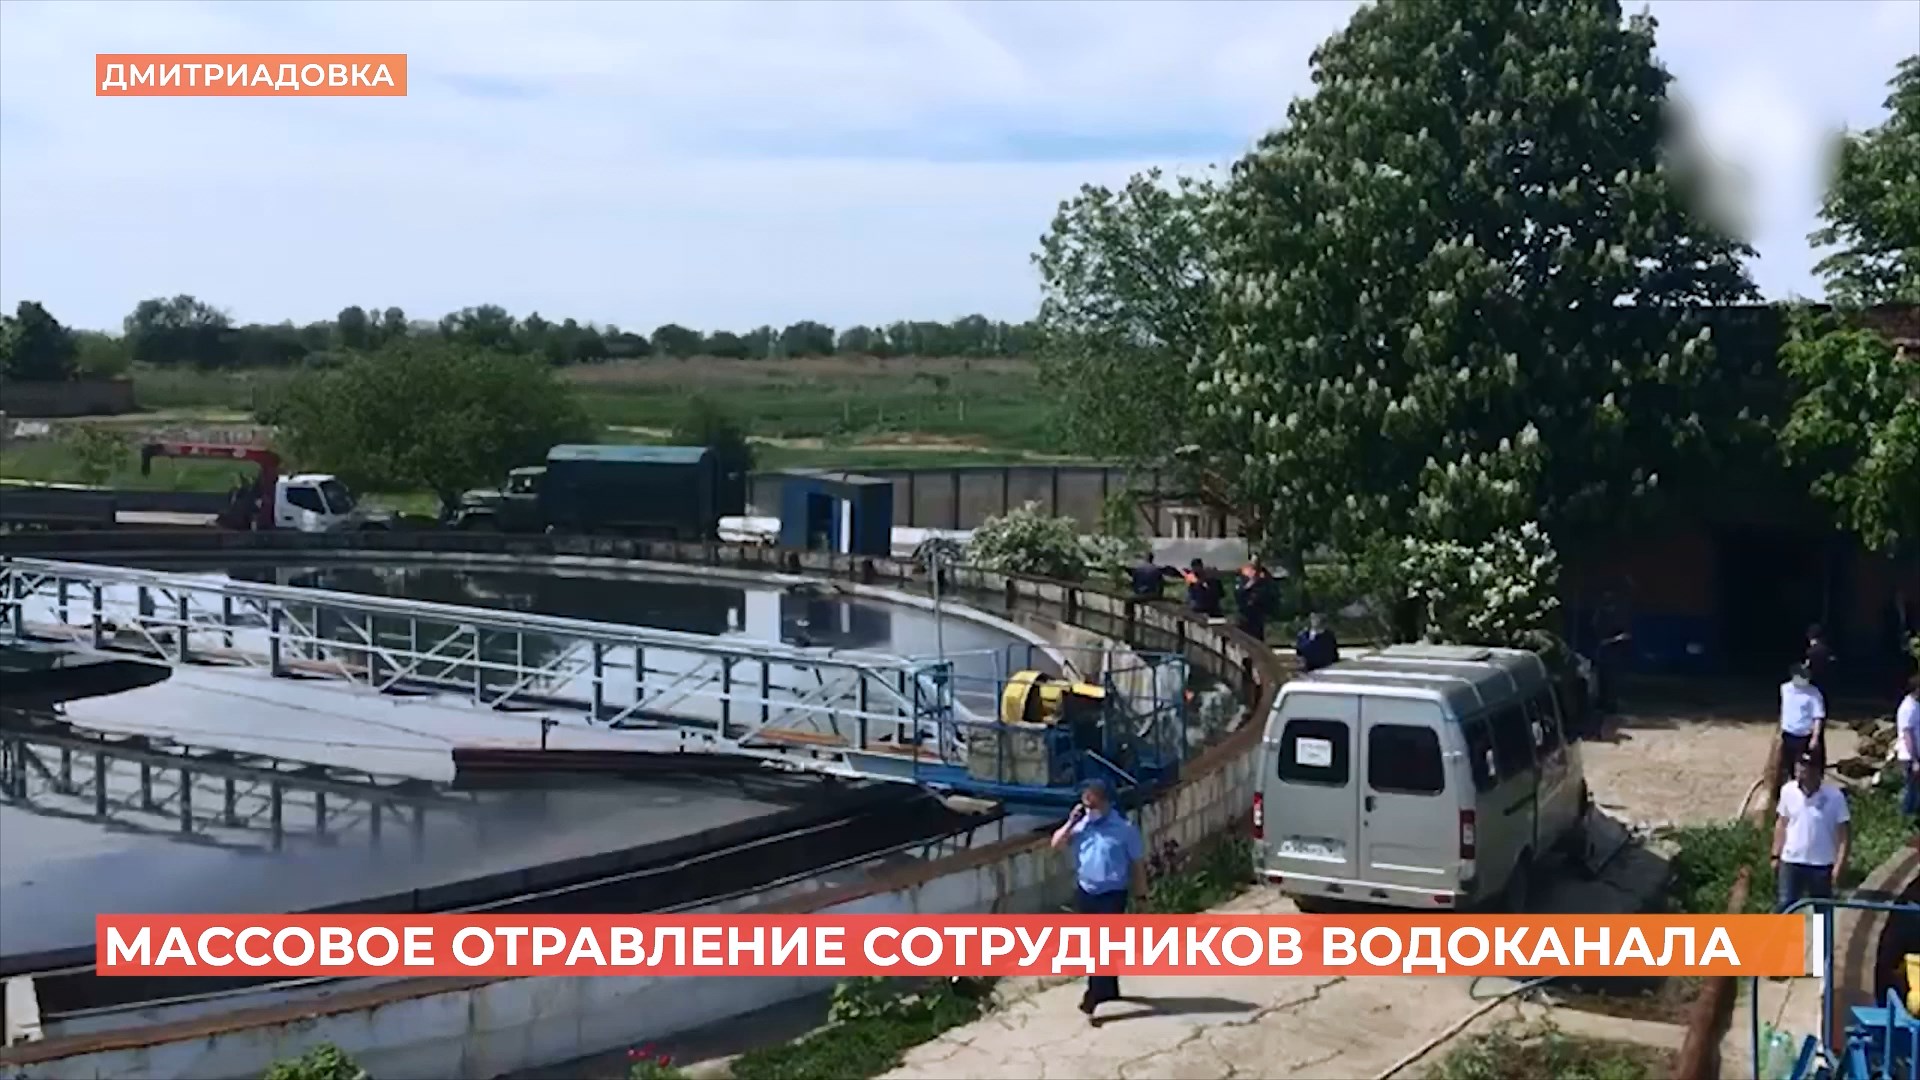 10 сотрудников Водоканала погибли на очистных сооружениях под Таганрогом из-за выброса метана